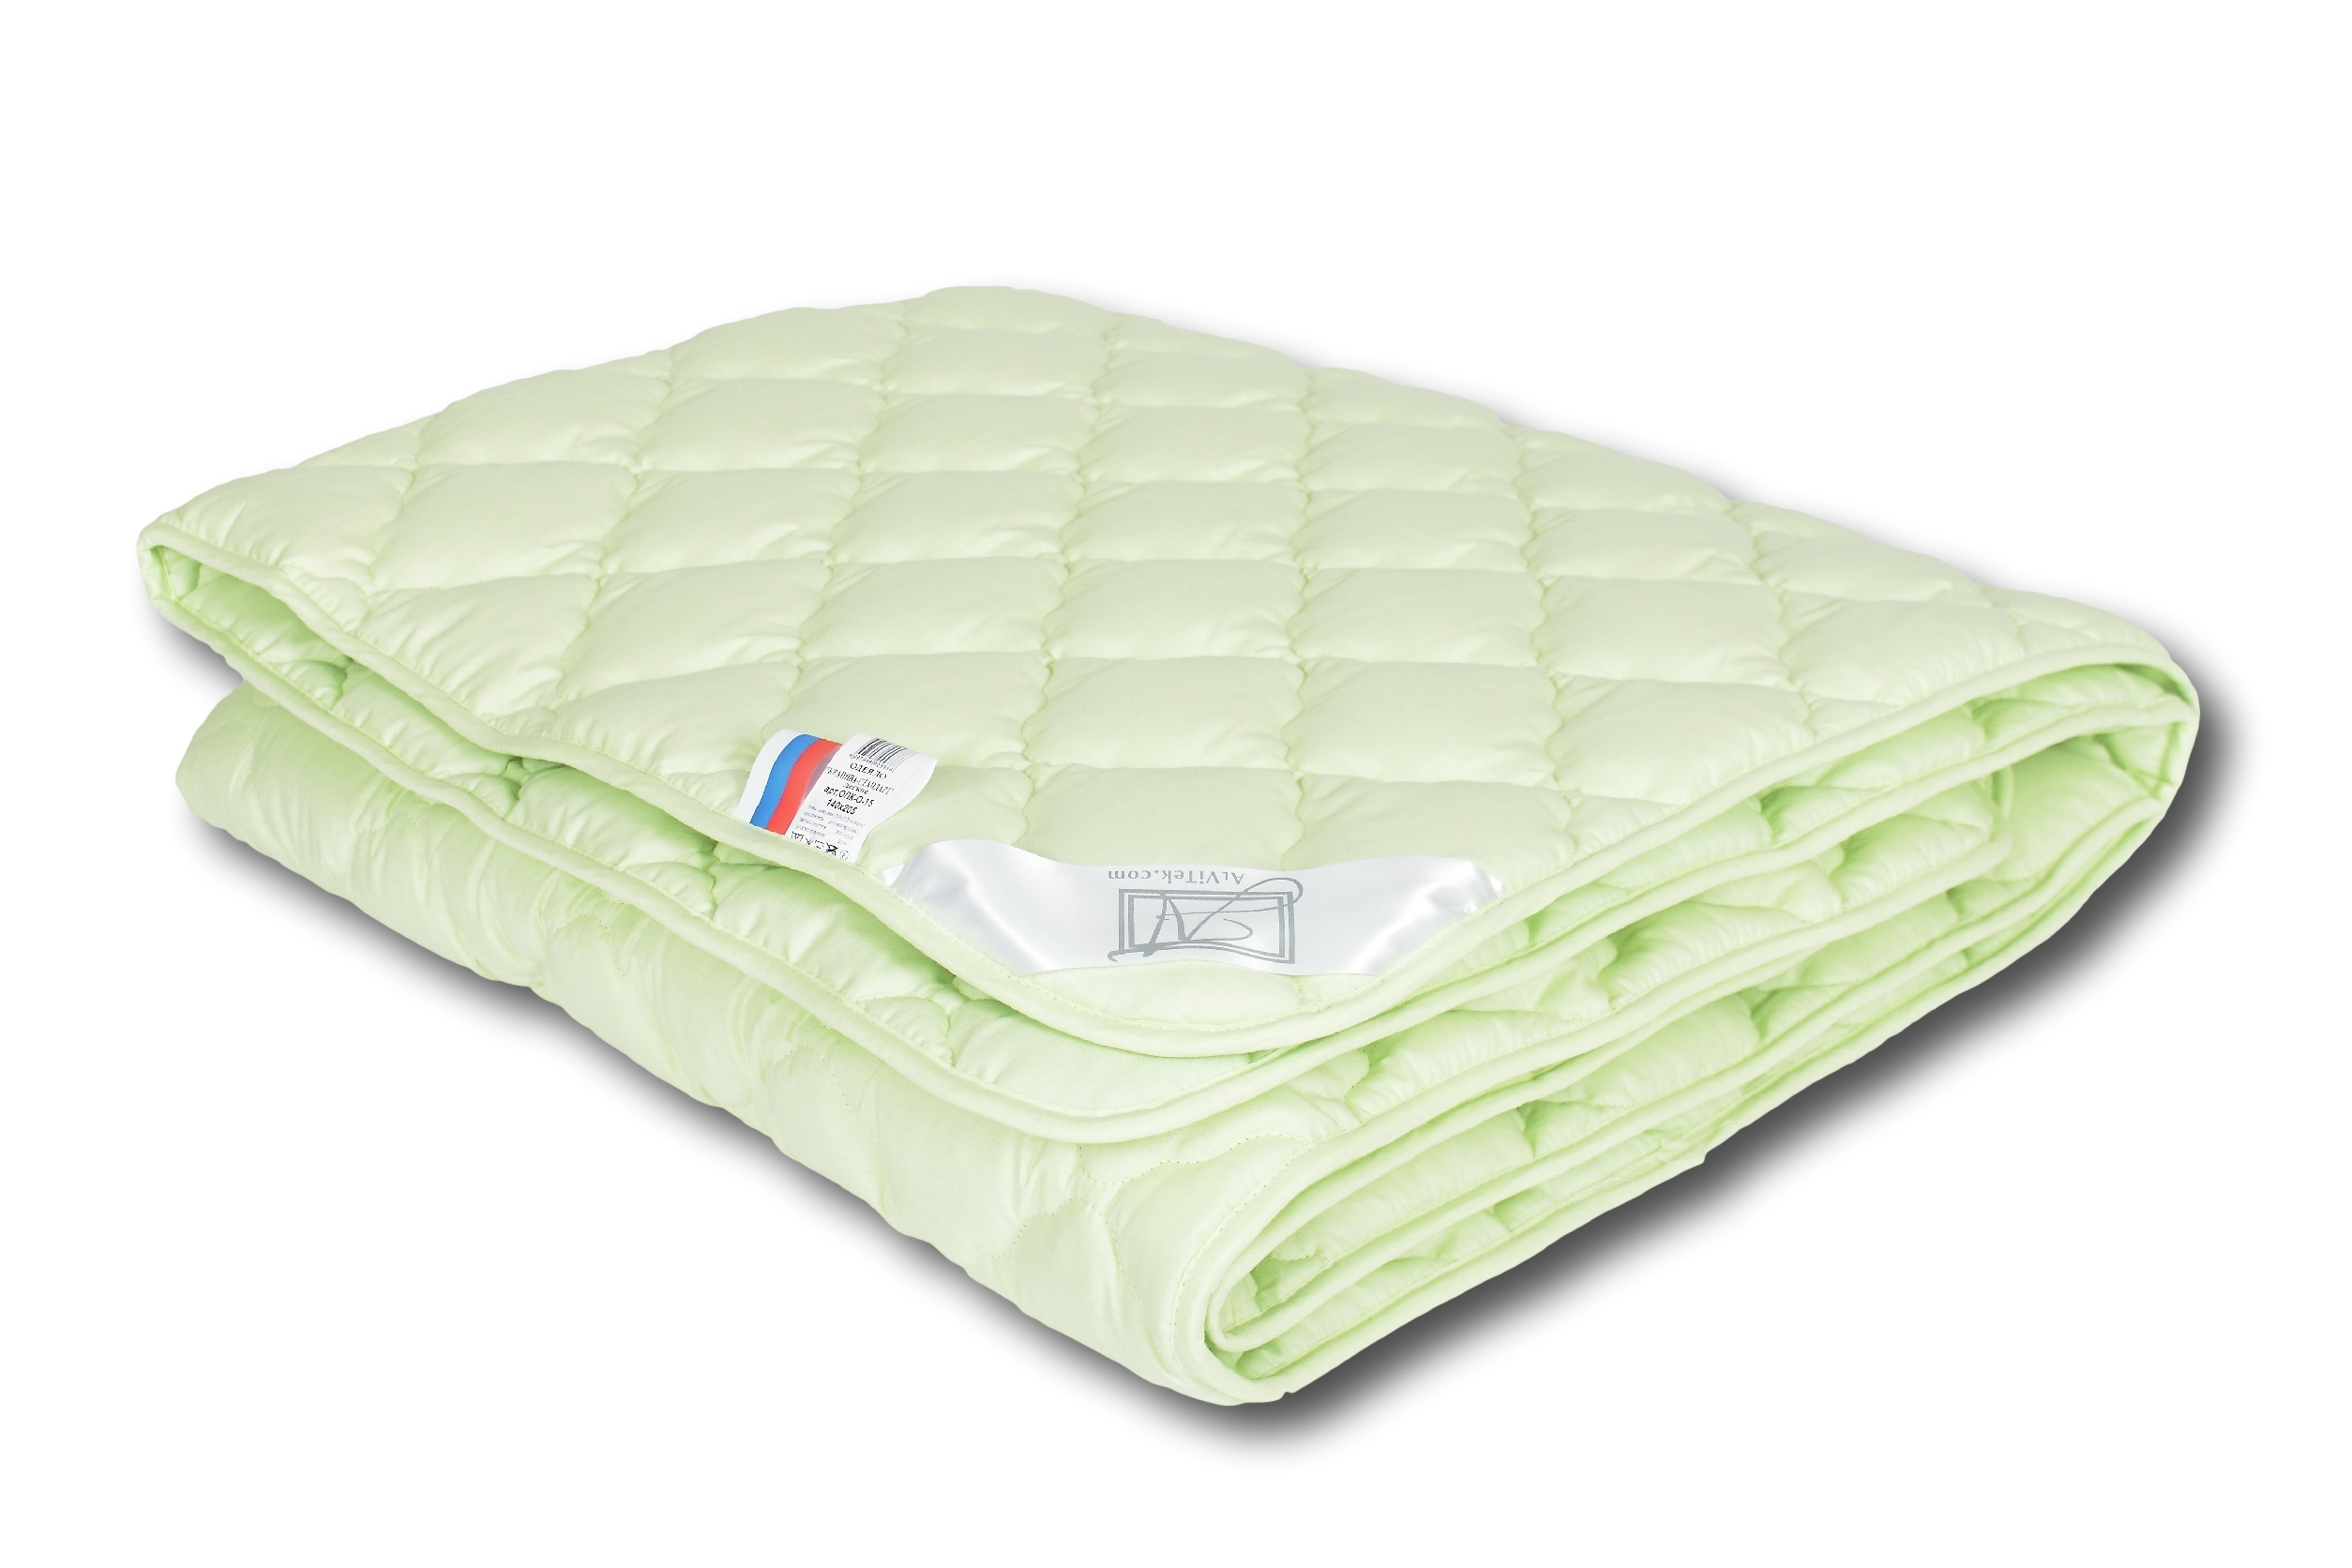 Одеяло Lace Легкое (200х220 см), размер 200х220 см, цвет зеленый avt72003 Одеяло Lace Легкое (200х220 см) - фото 1